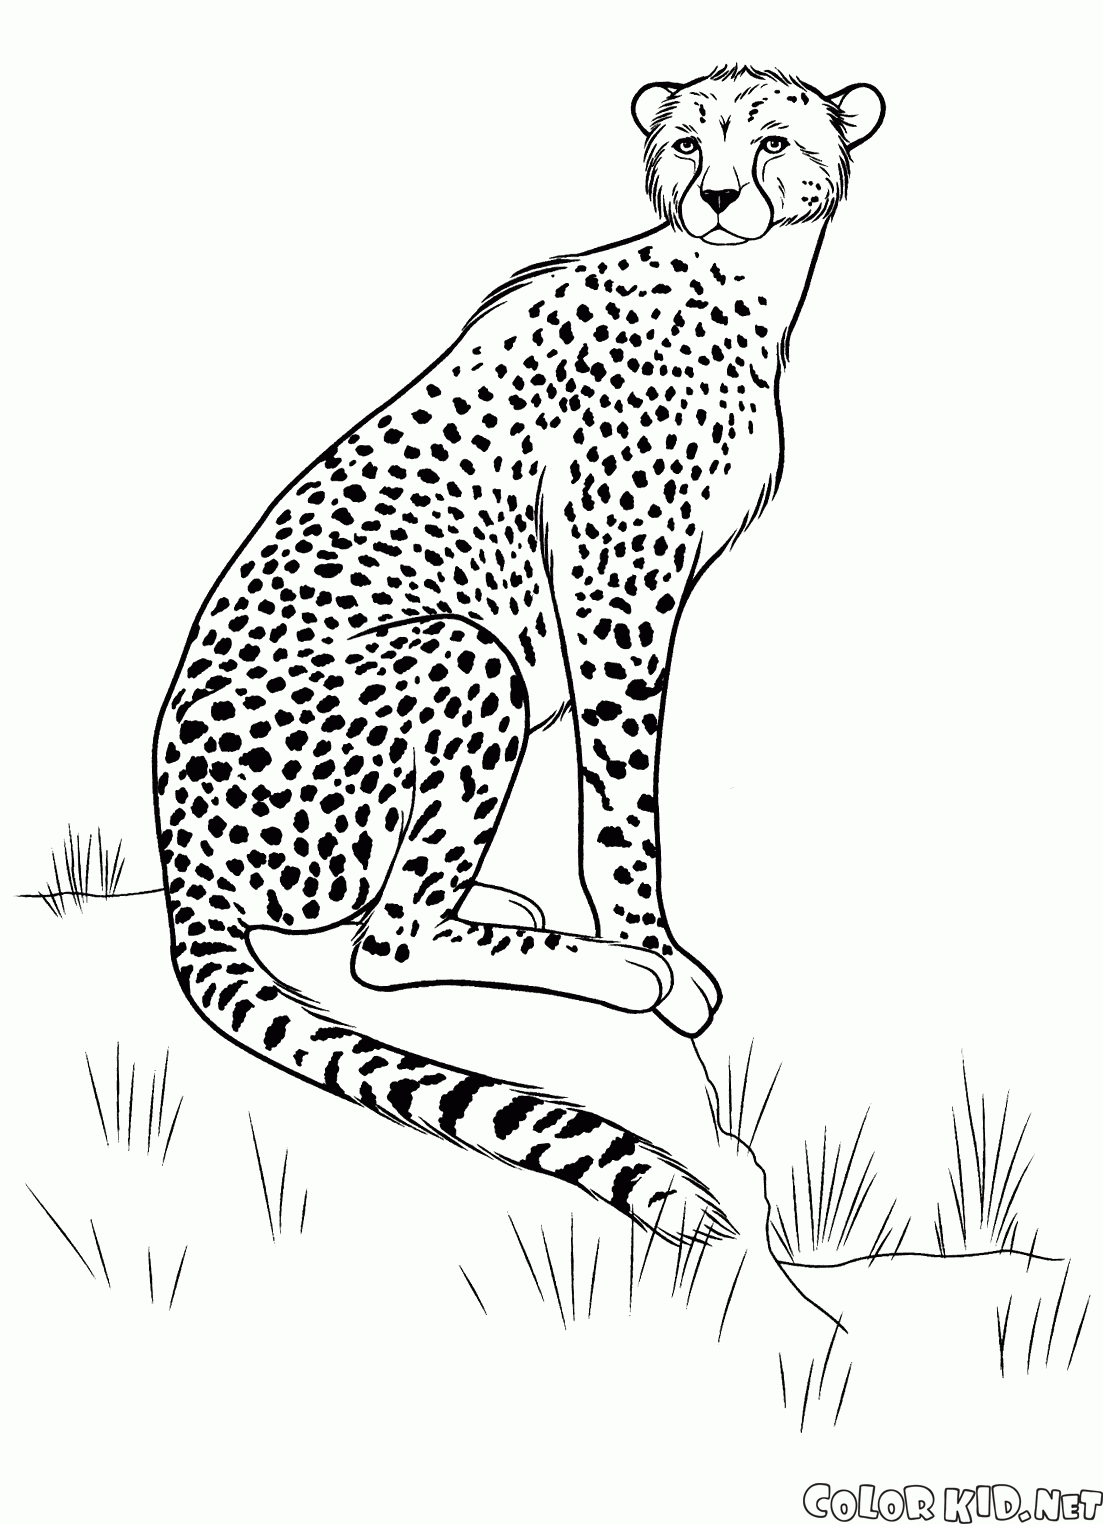 Cheetah sulla caccia